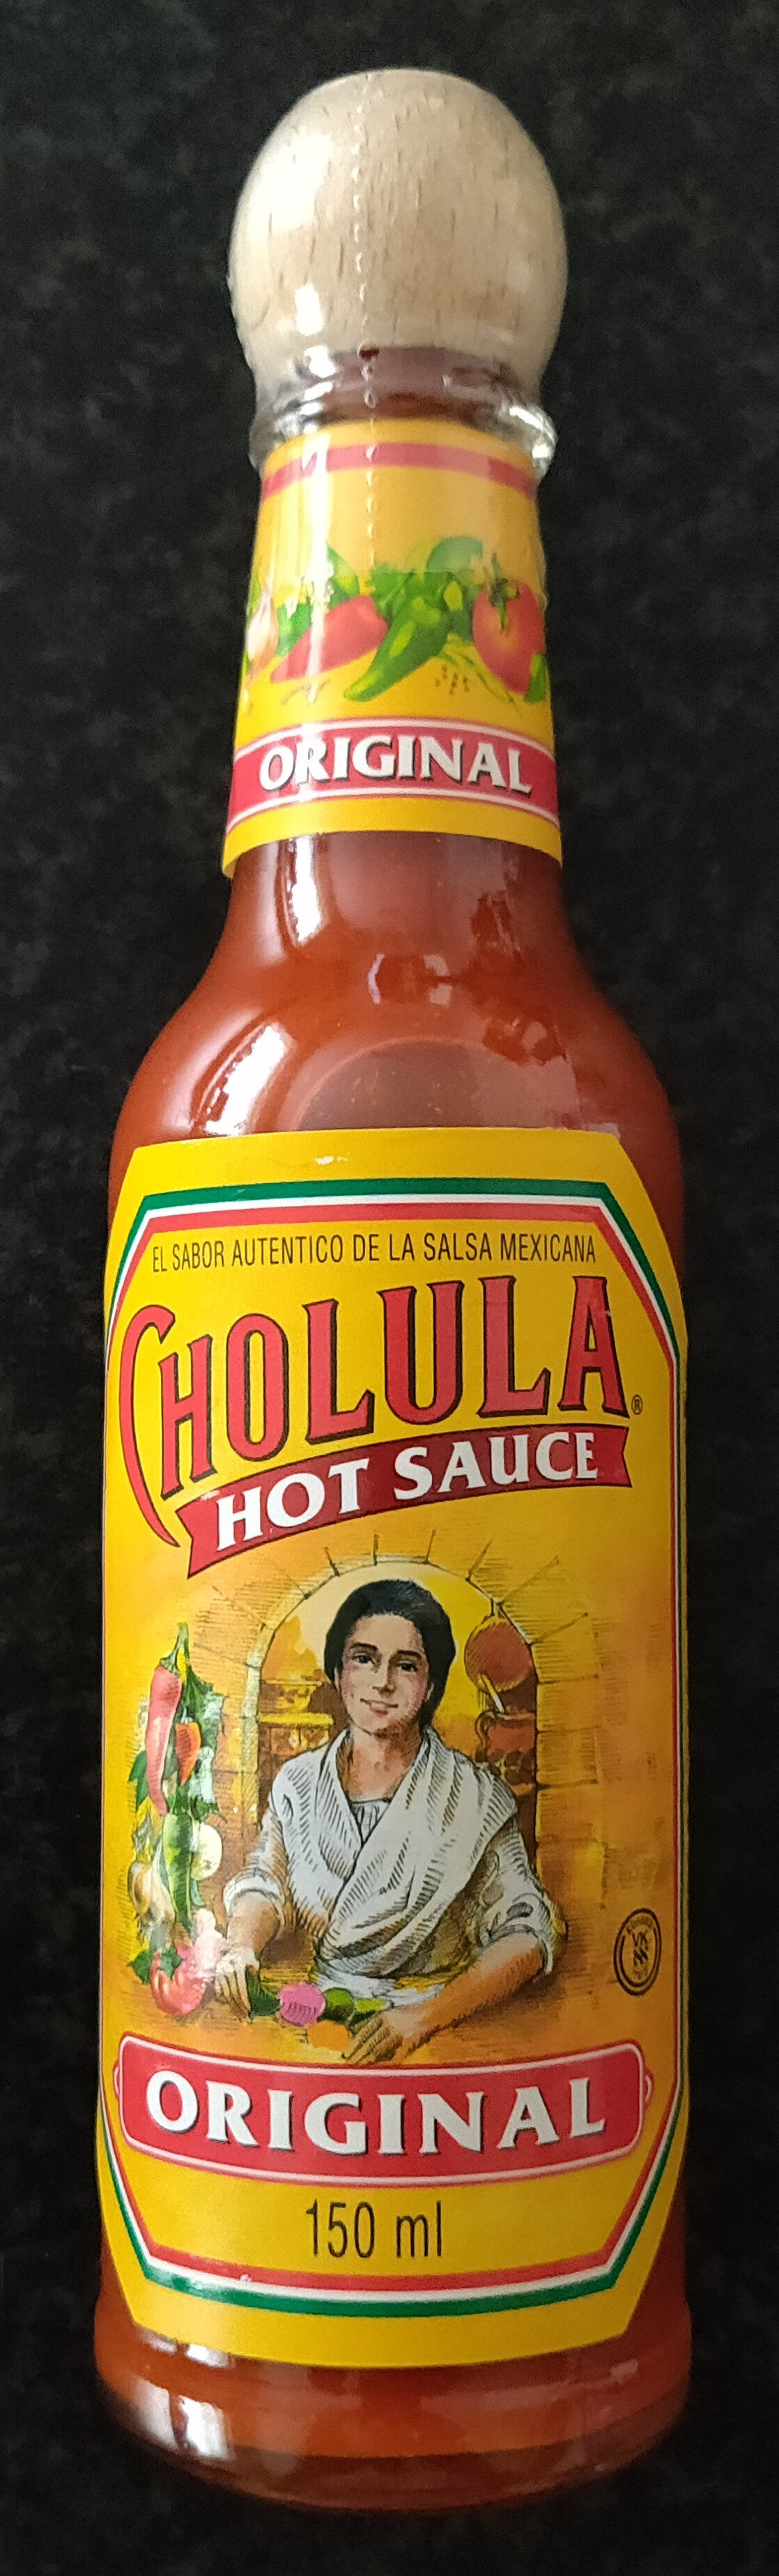 Cholula Hot Sauce Original - Product